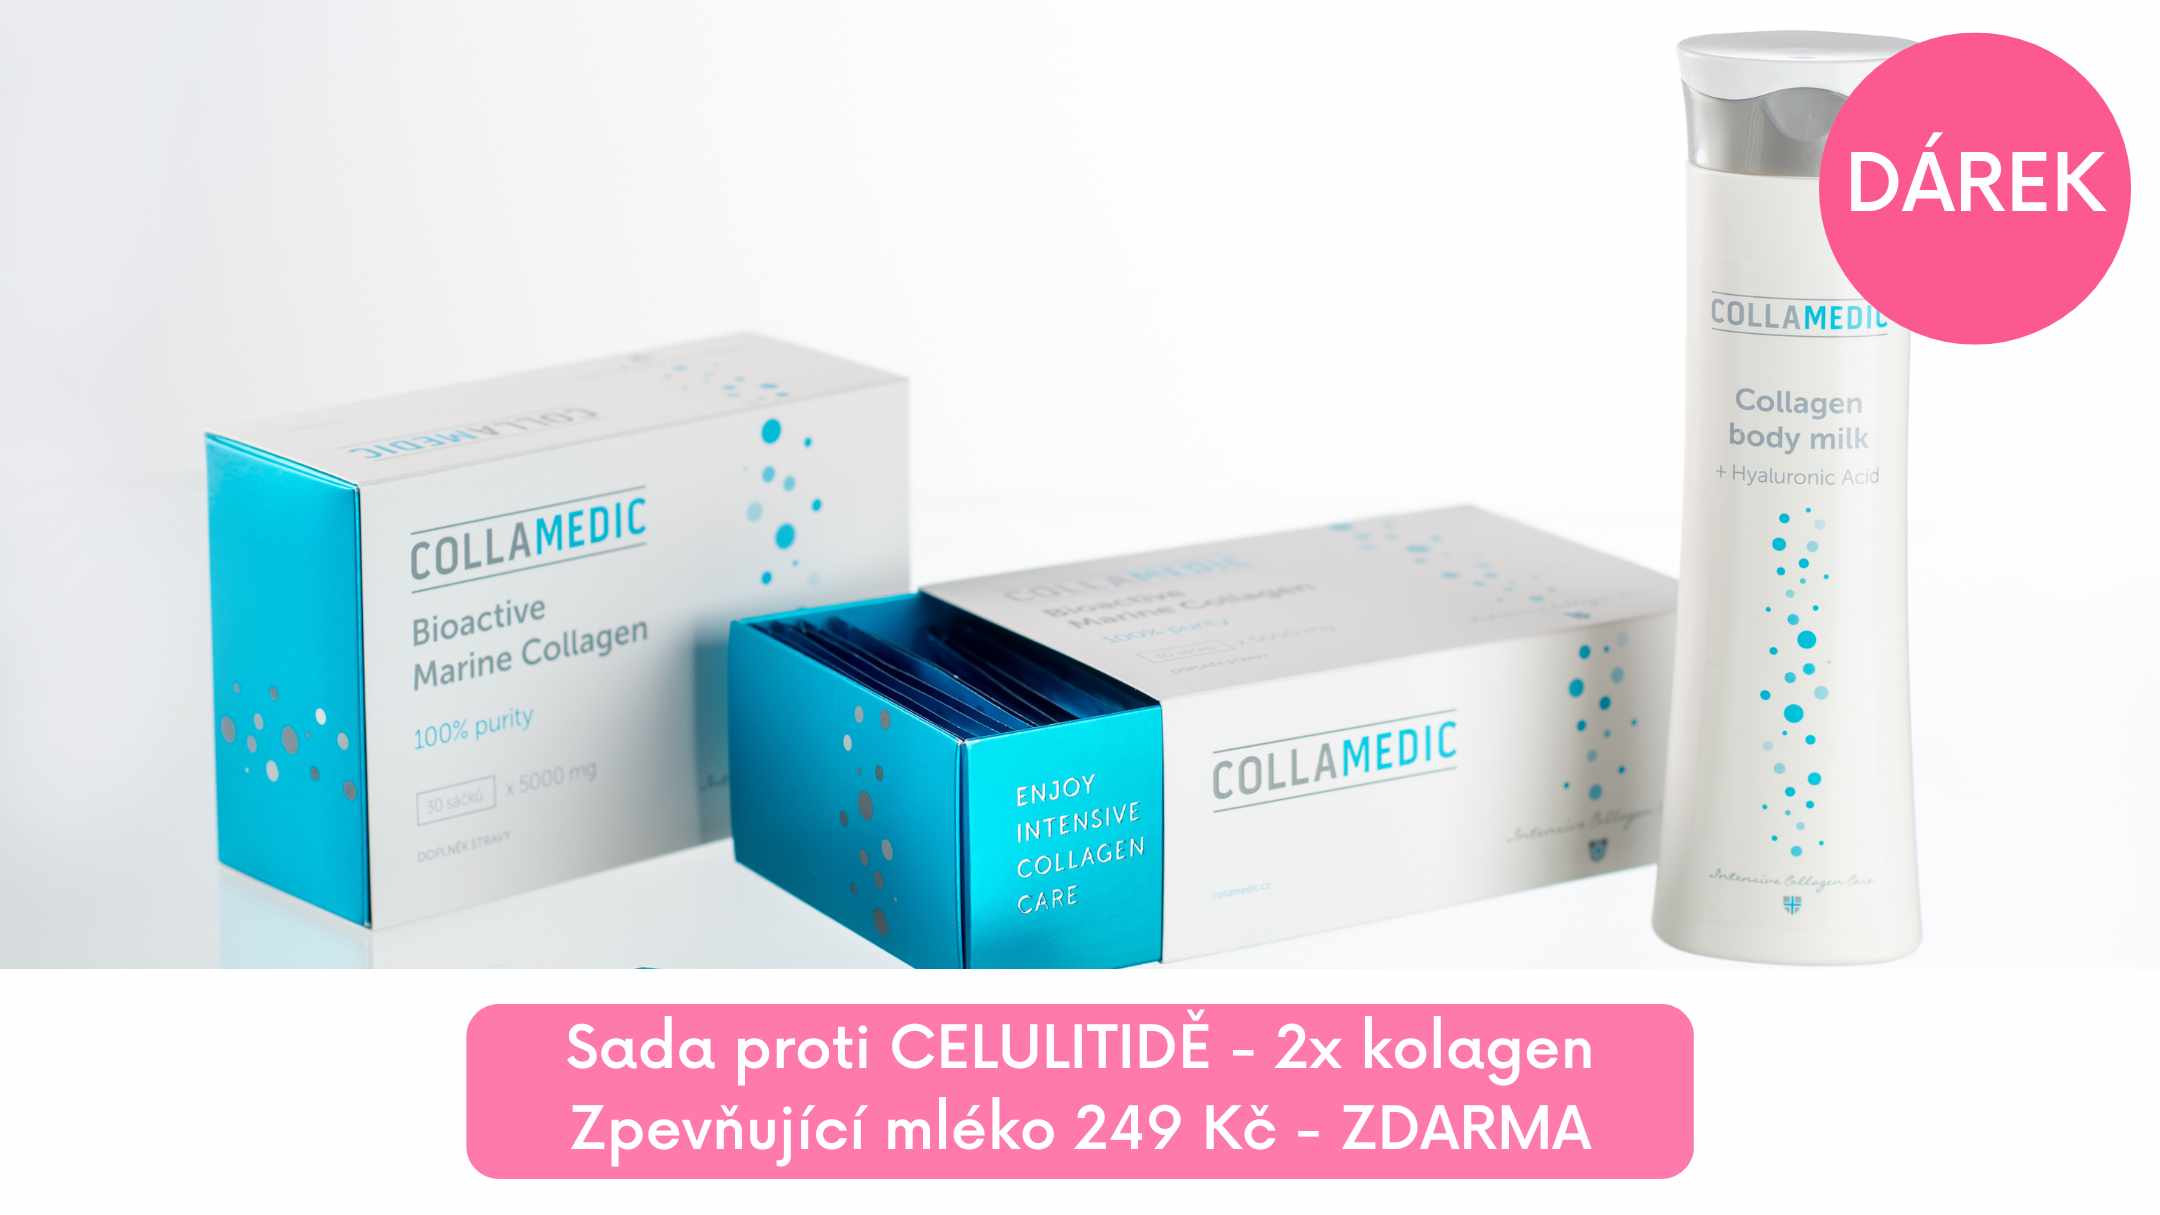 Collagen drink sada - bioaktivní mořský kolagen na celulitidu + dárek